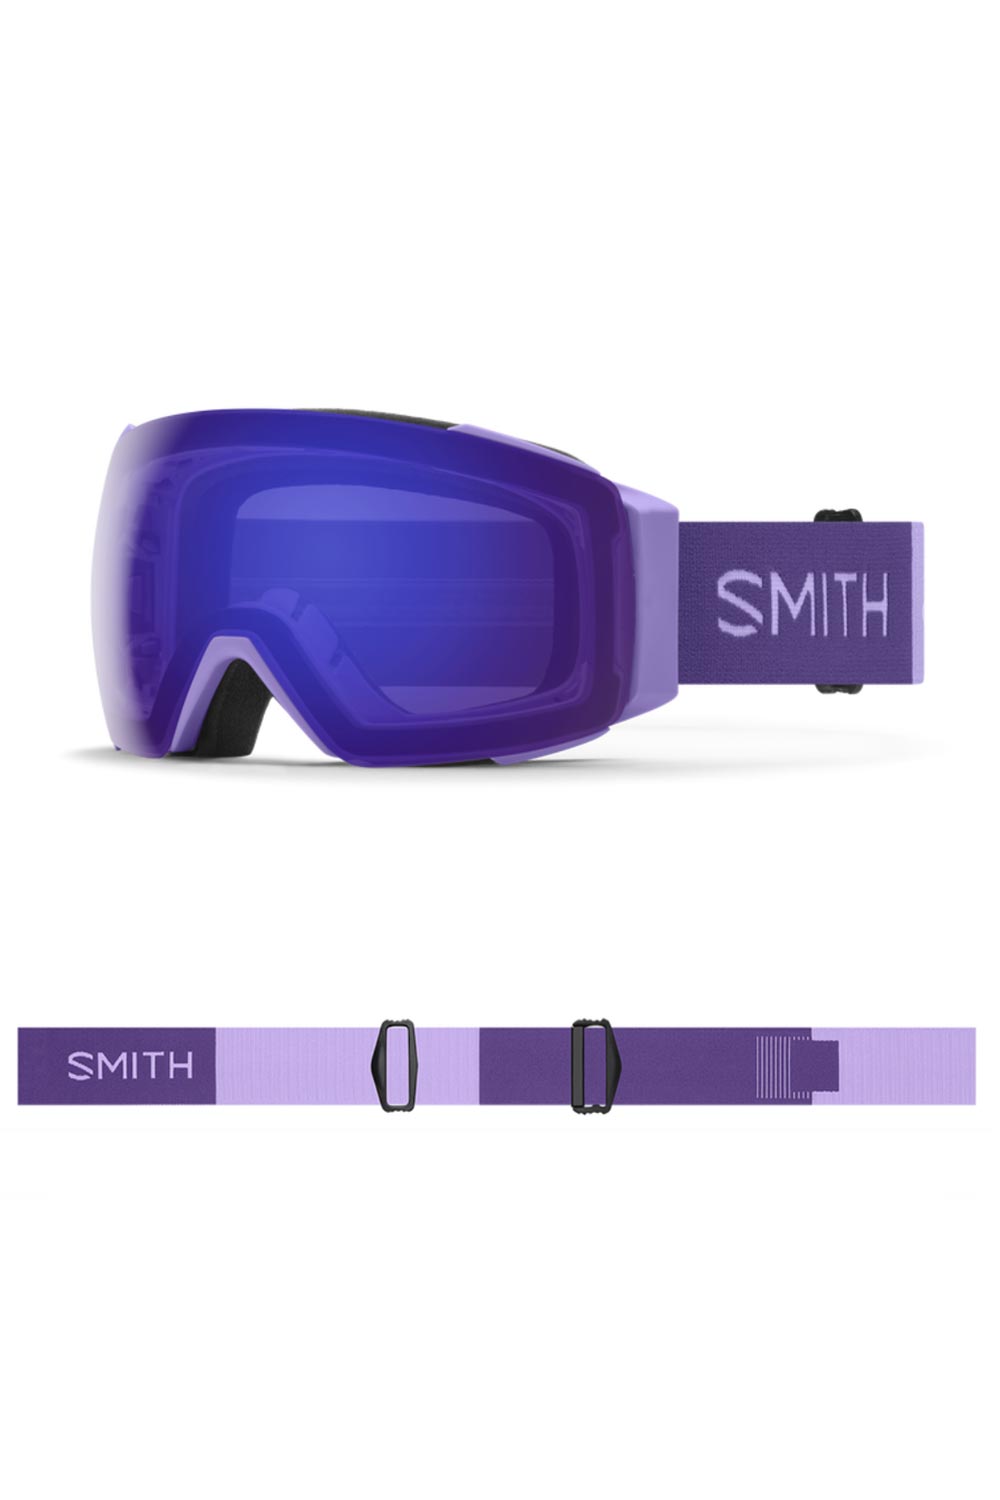 Smith ski goggles, purple strap and purple lens